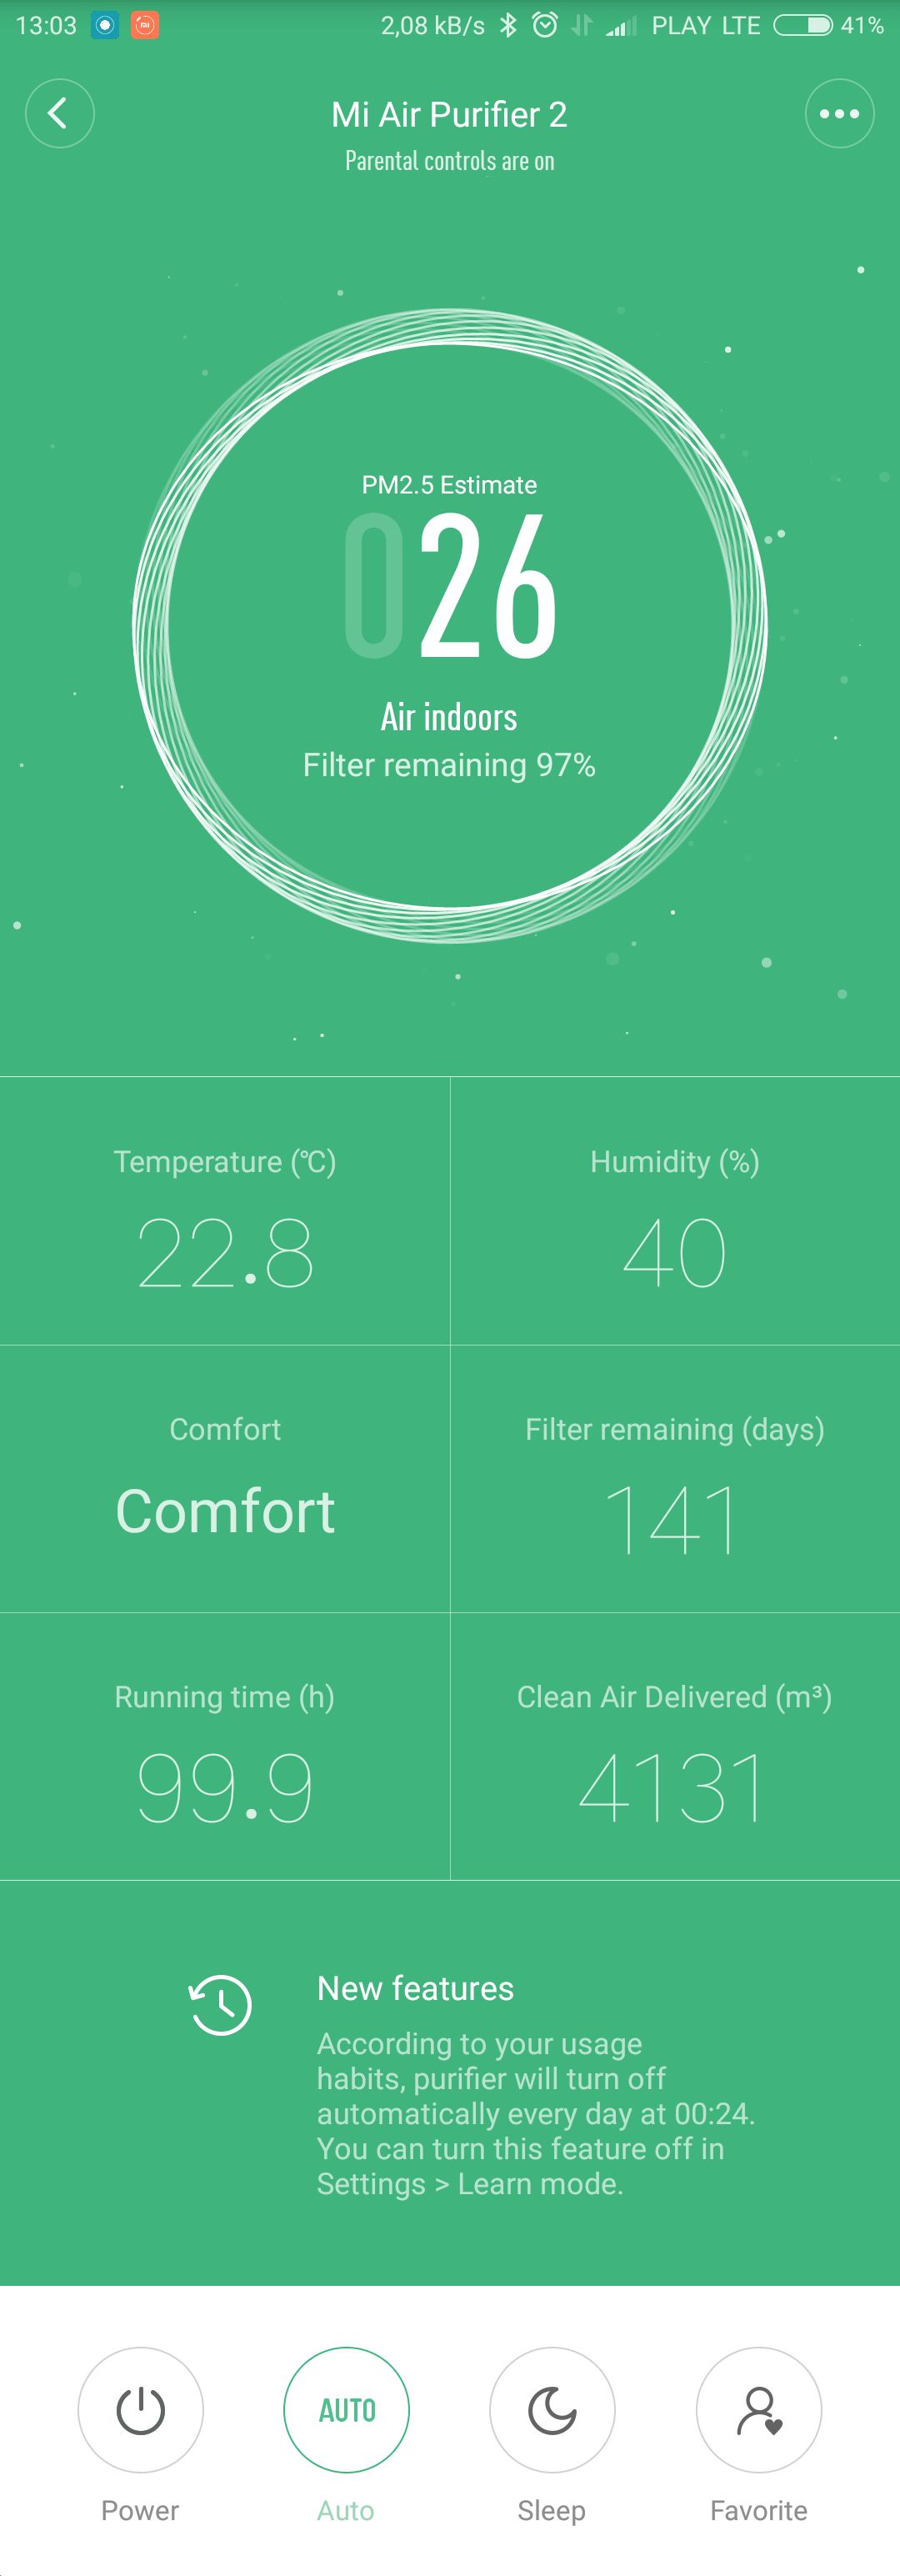 Od góry kolejno: aktualne stężenie, temperatura, wilgotność, wyliczony komfort na podstawie wcześniejszych danych, orientacyjna ilość dni do wymiany filtra, czas działania i objętość przefiltrowanego, czystego powietrza.